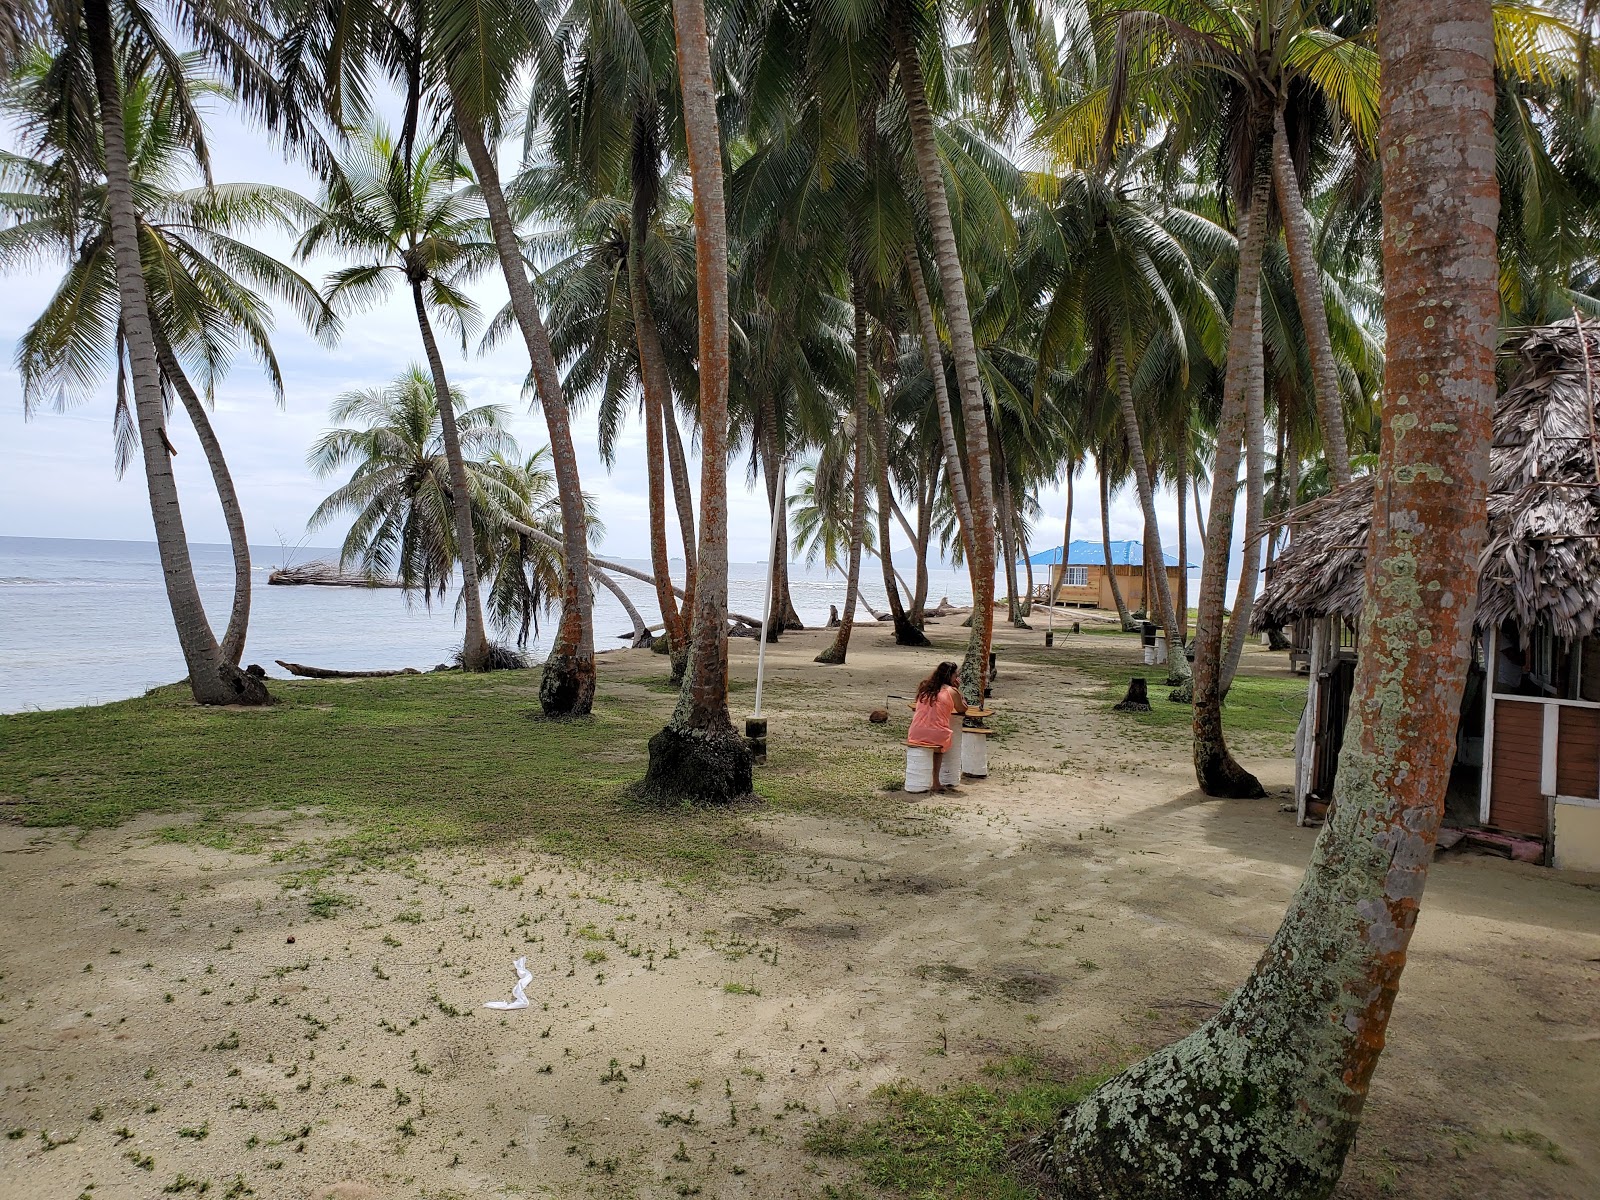 Foto af Guna Yala Gulf island beliggende i naturområde